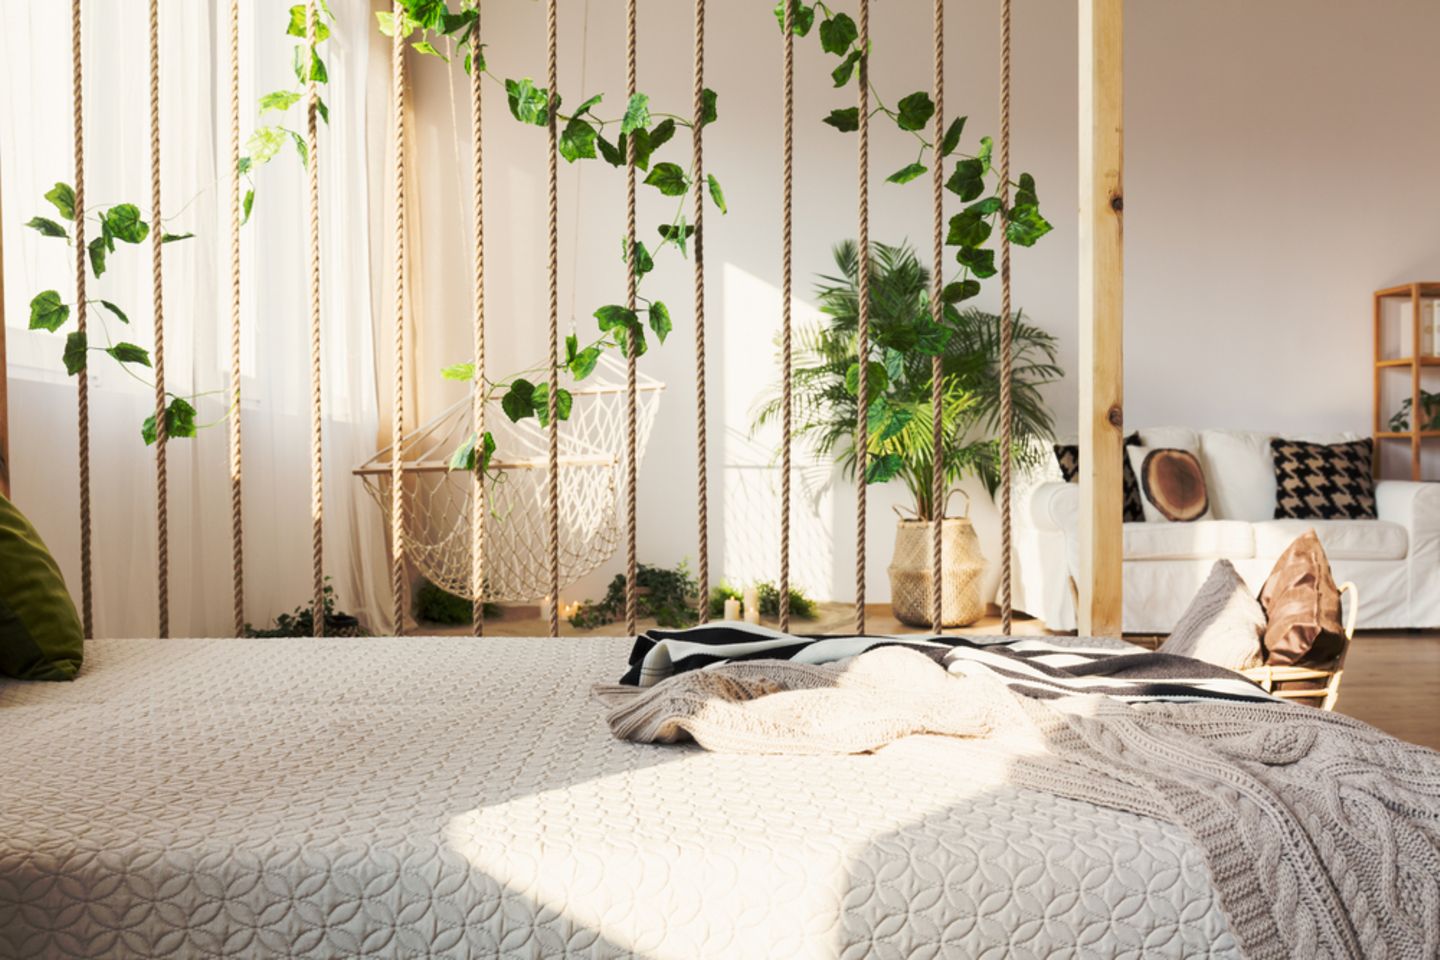 Raumteiler Ideen: 9 kreative Lösungen: Bett mit einem Raumteiler aus Seilen und Pflanzen, dahinter Sofa und Hängematte